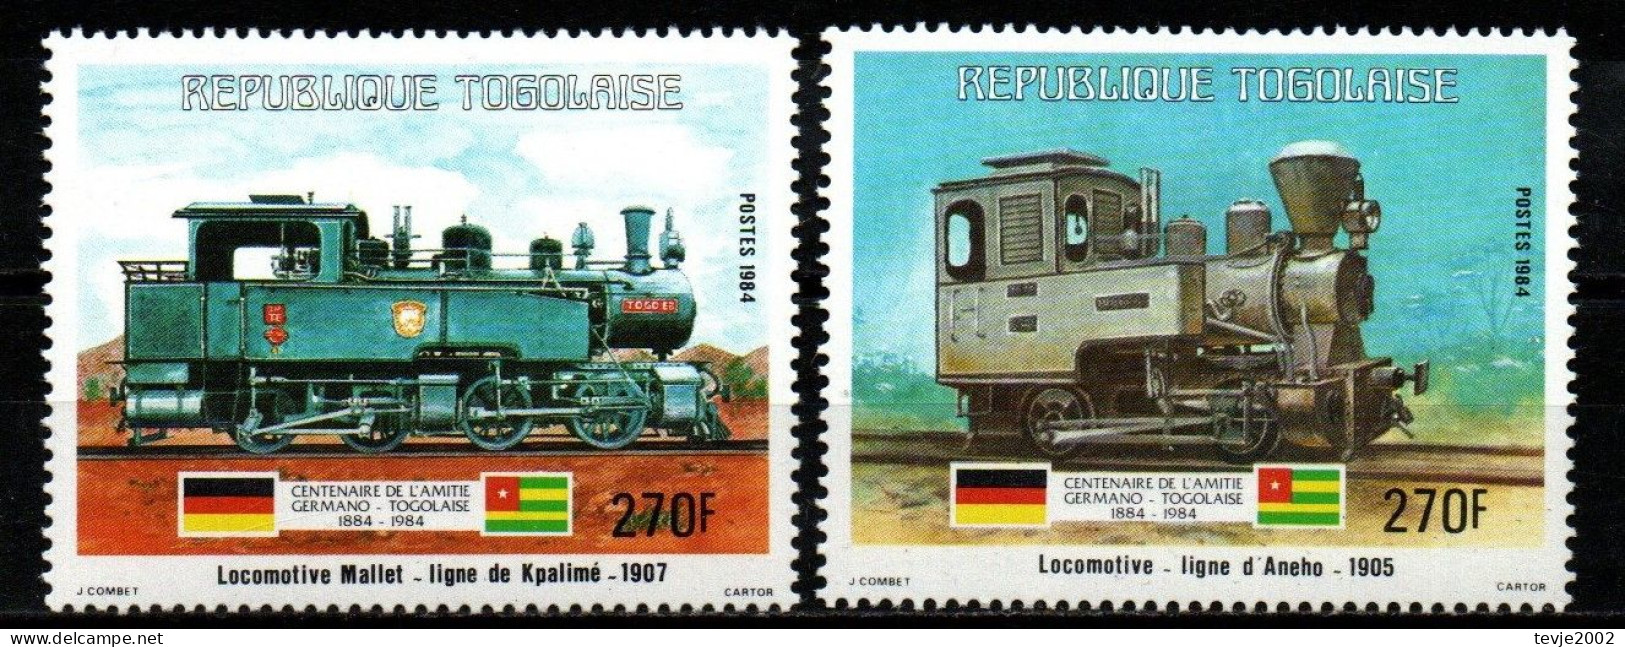 Togo 1984 - Mi.Nr. 1707 + 1708 - Postfrisch MNH - Eisenbahnen Railways Lokomotiven Locomotives - Trains